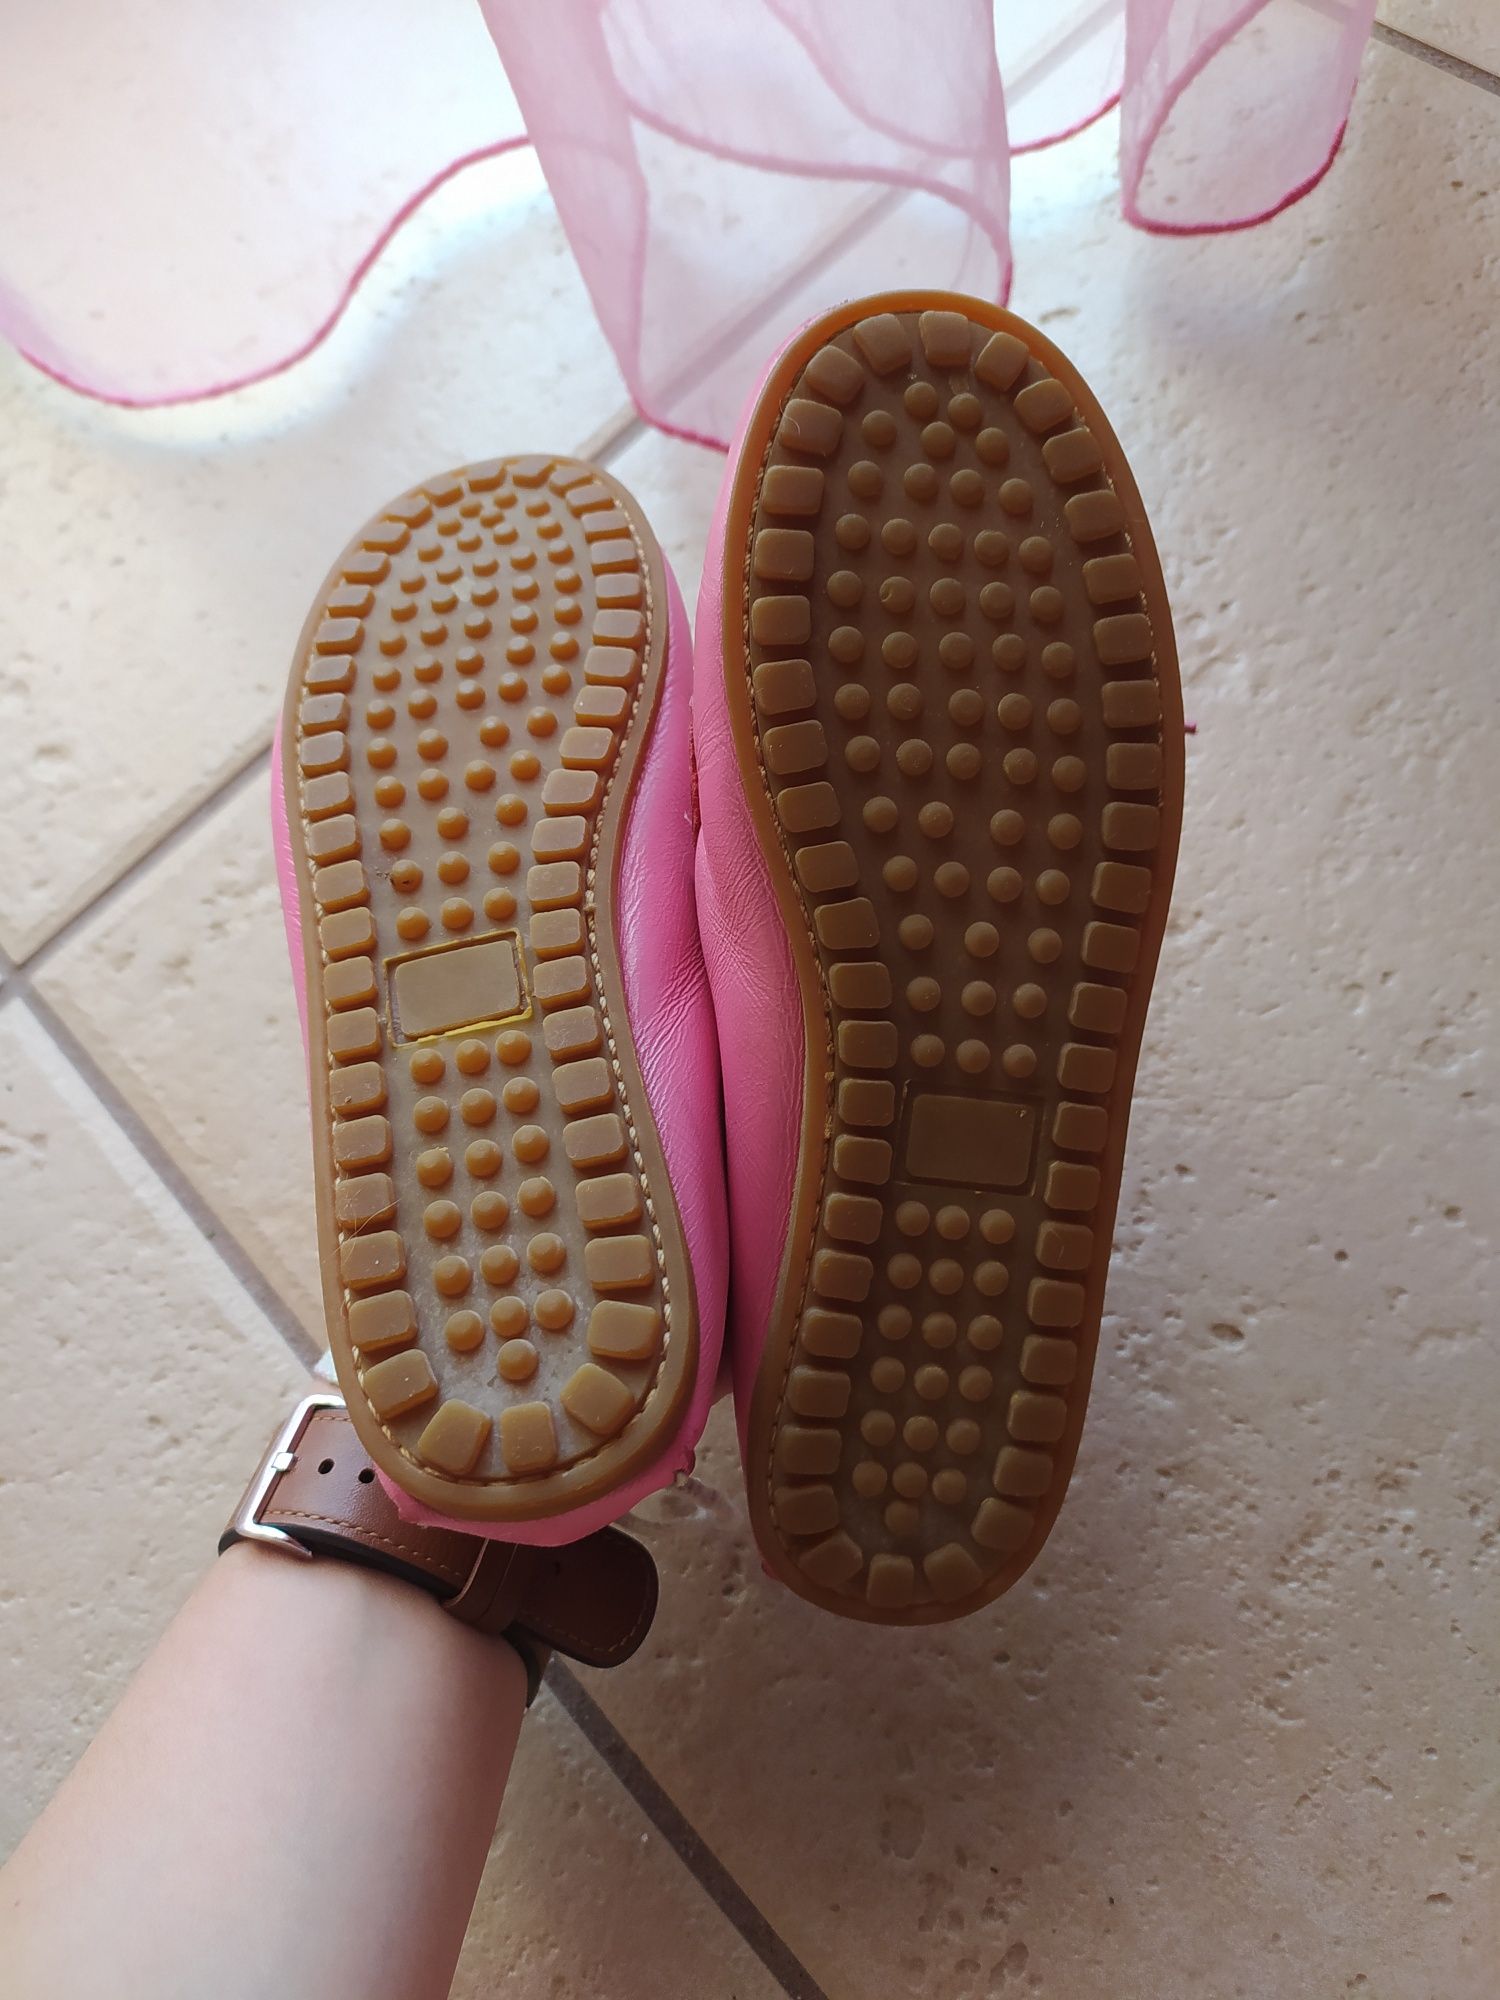 Sapatos Vela em pele cor de rosa par criança